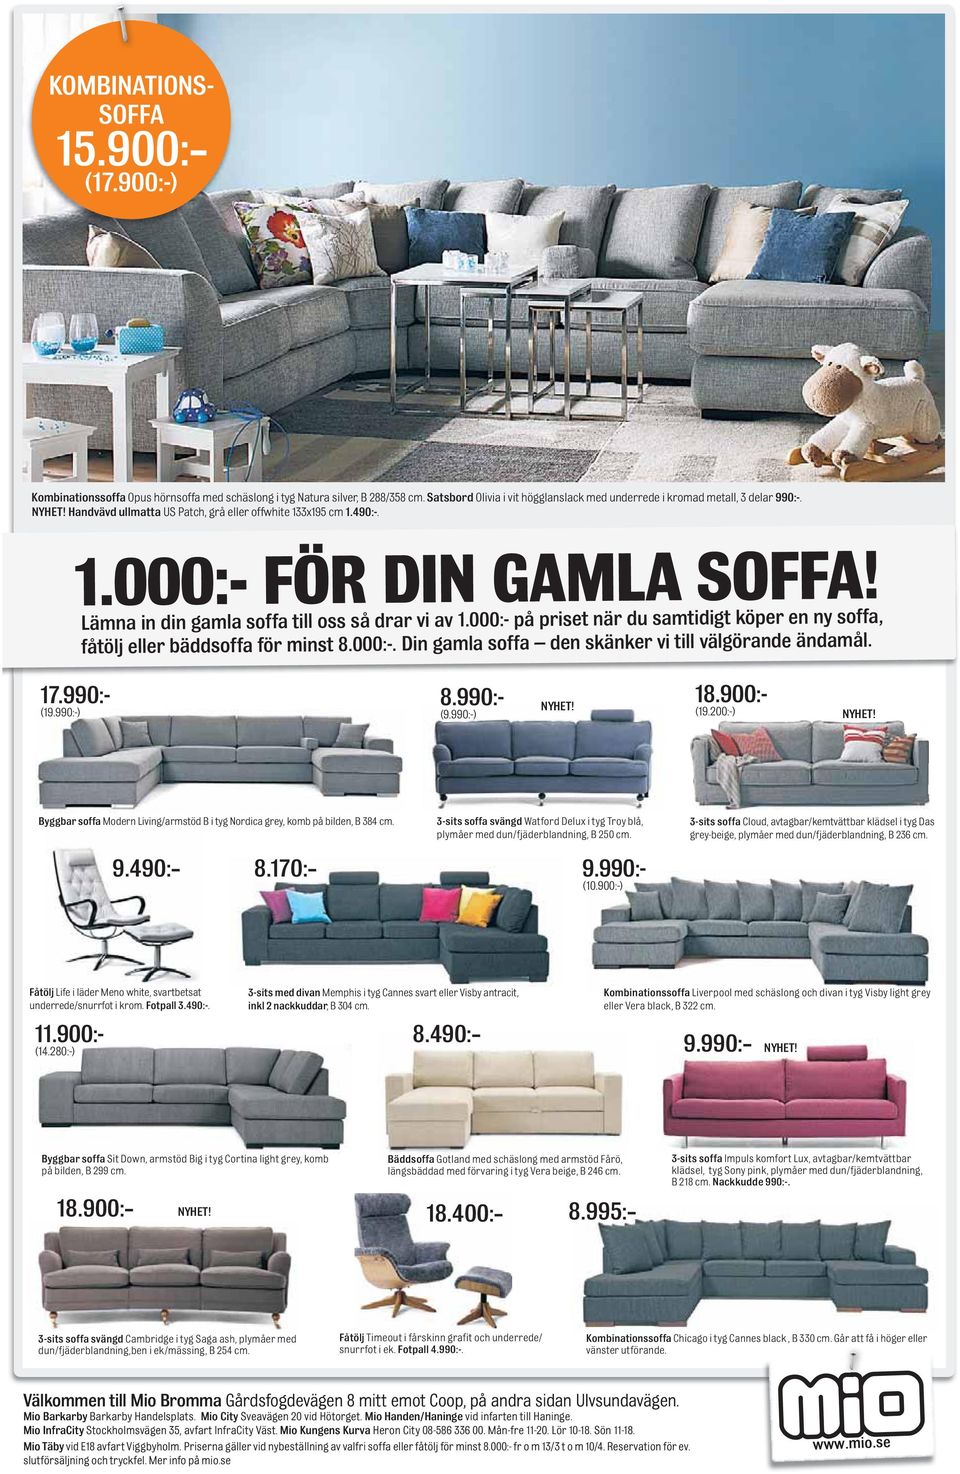 Lämna in din gamla soffa till oss så drar vi av 1.000:- på priset när du samtidigt köper en ny soffa, fåtölj eller bäddsoffa för minst 8.000:-. Din gamla soffa den skänker vi till välgörande ändamål.